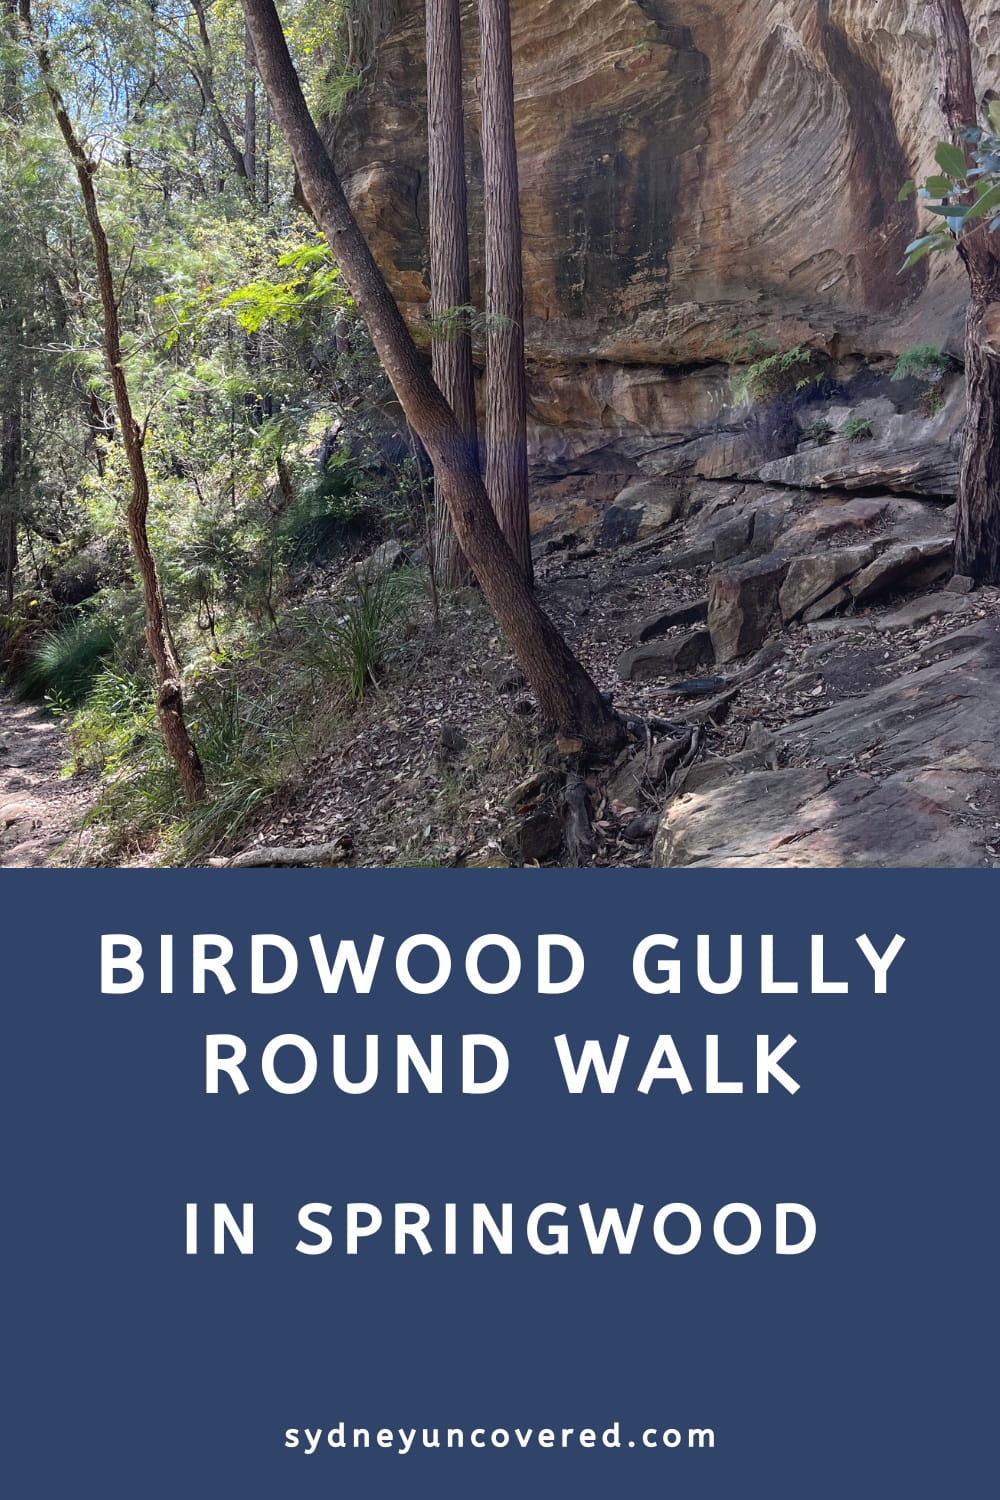 Birdwood Gully Round Walk in Springwood